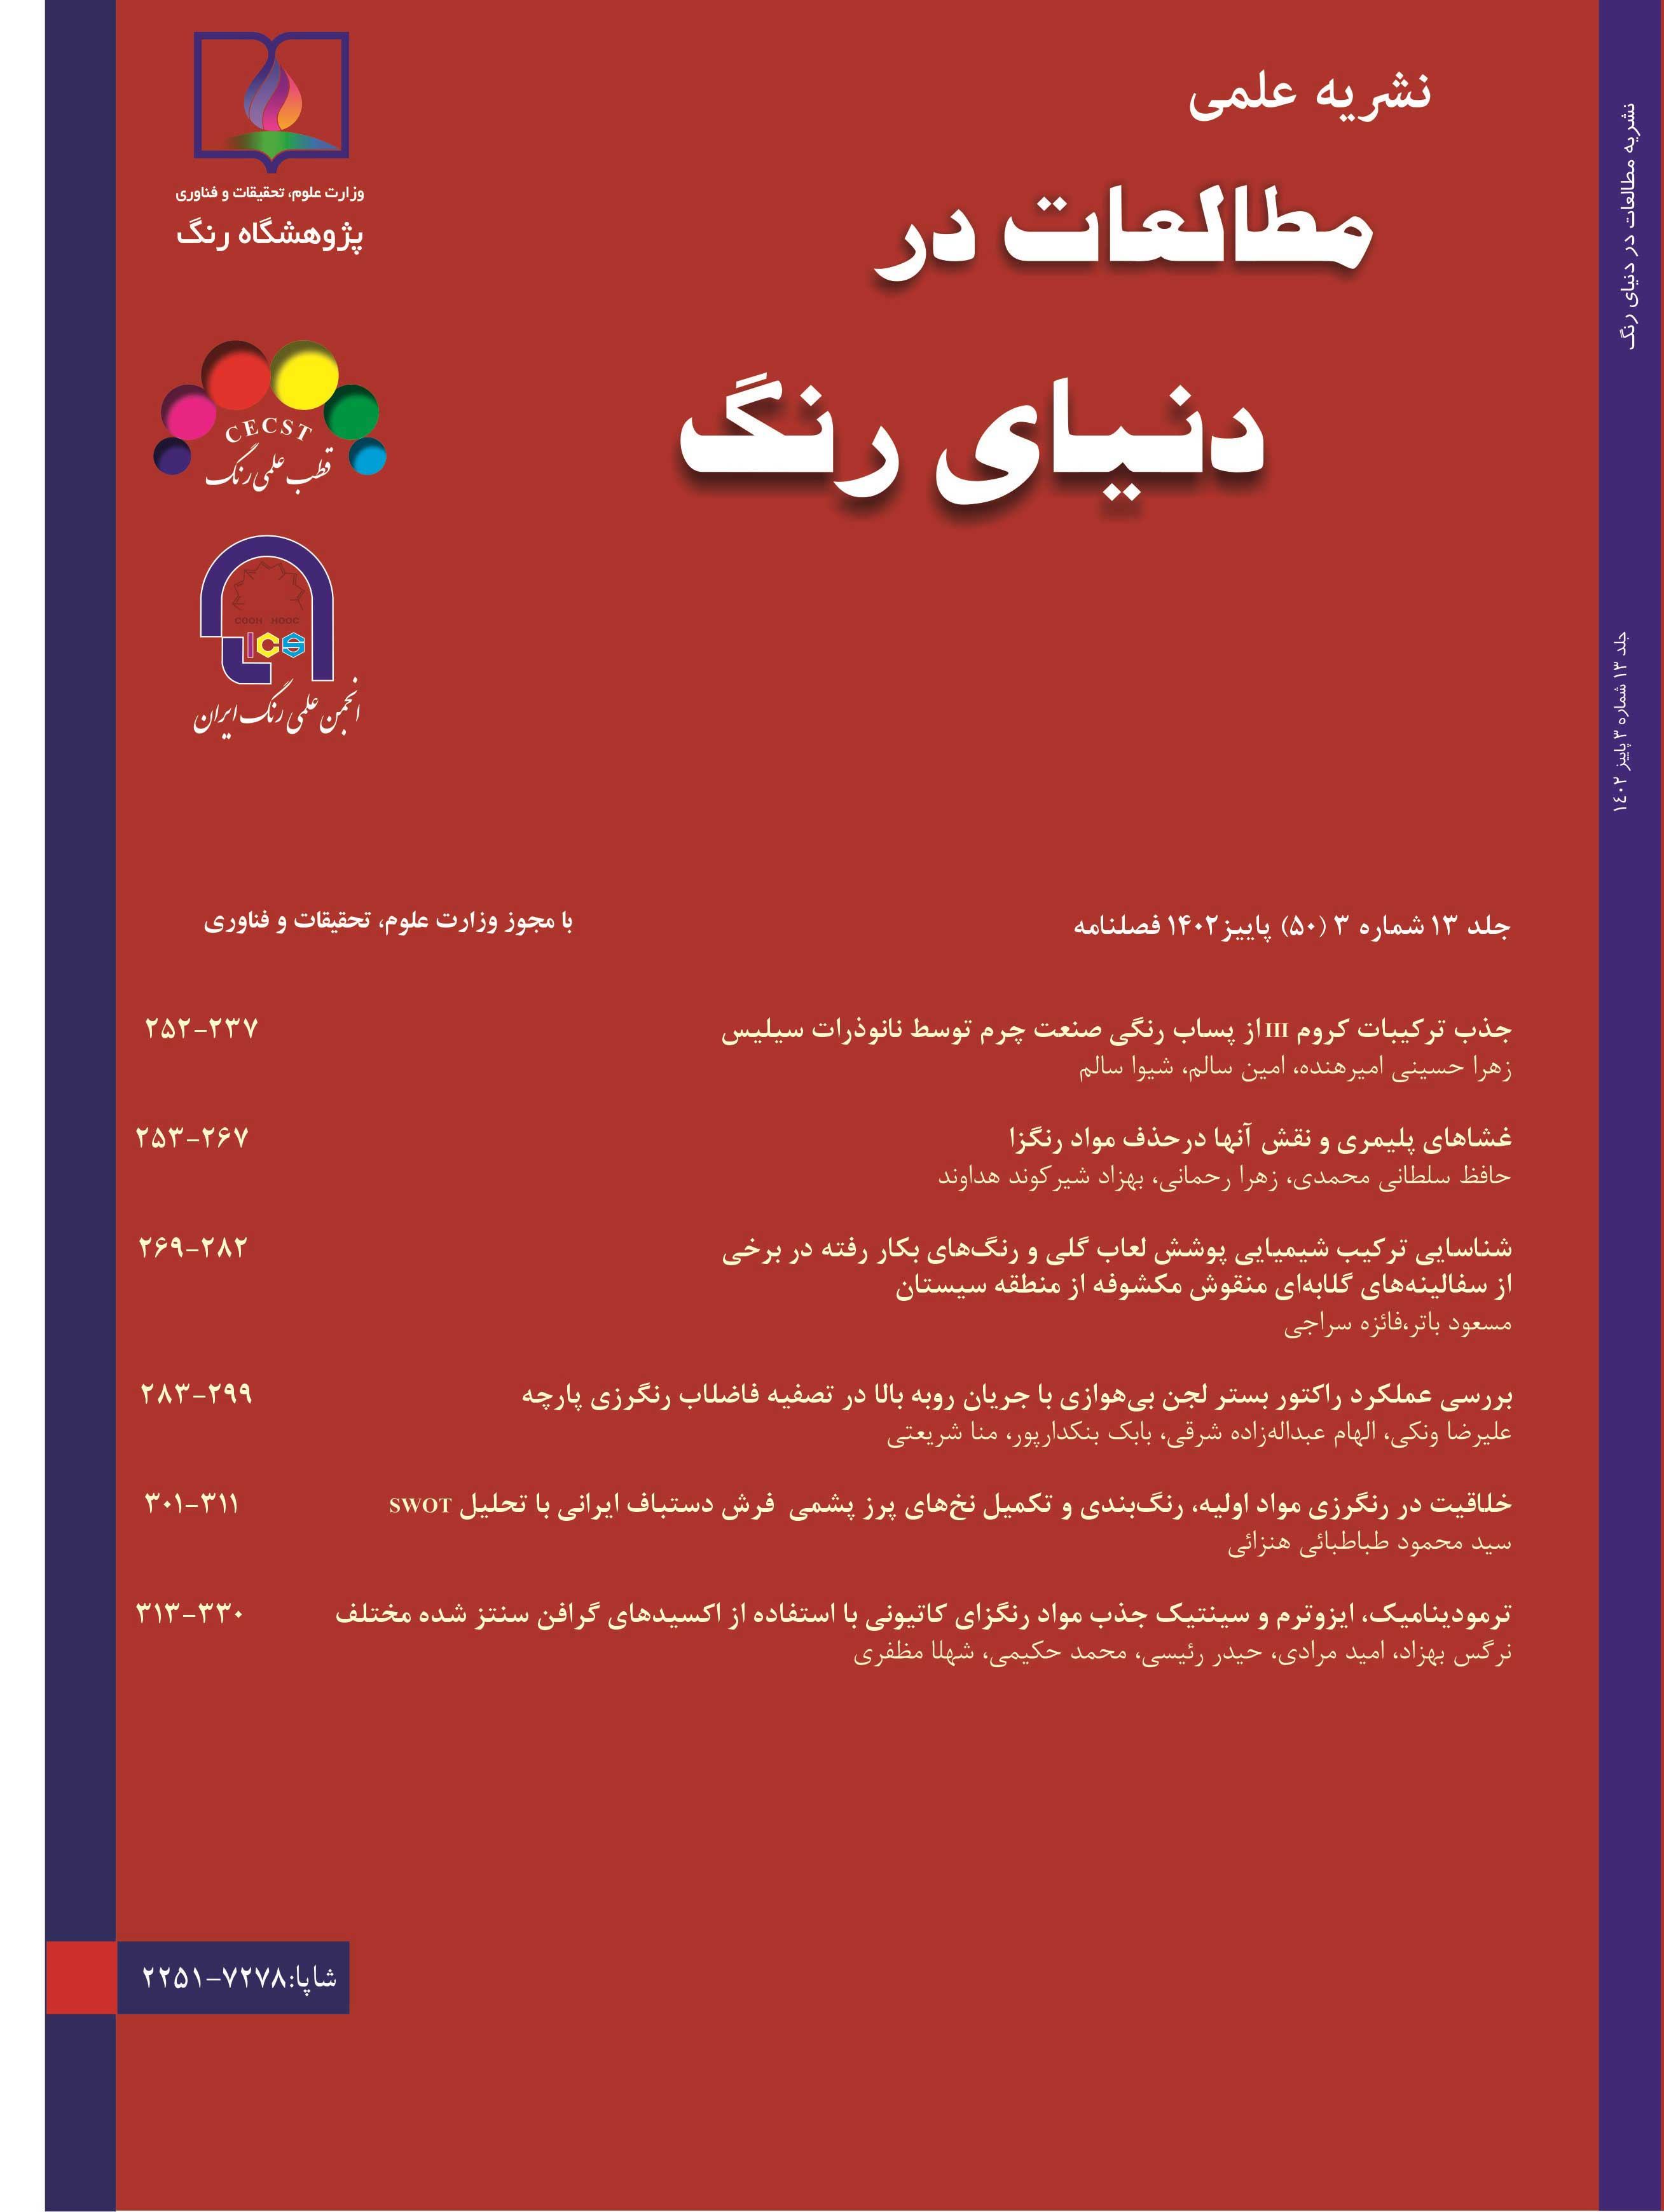 انجمن علمی رنگ ایران - نشریه مطالعات در دنیای رنگ